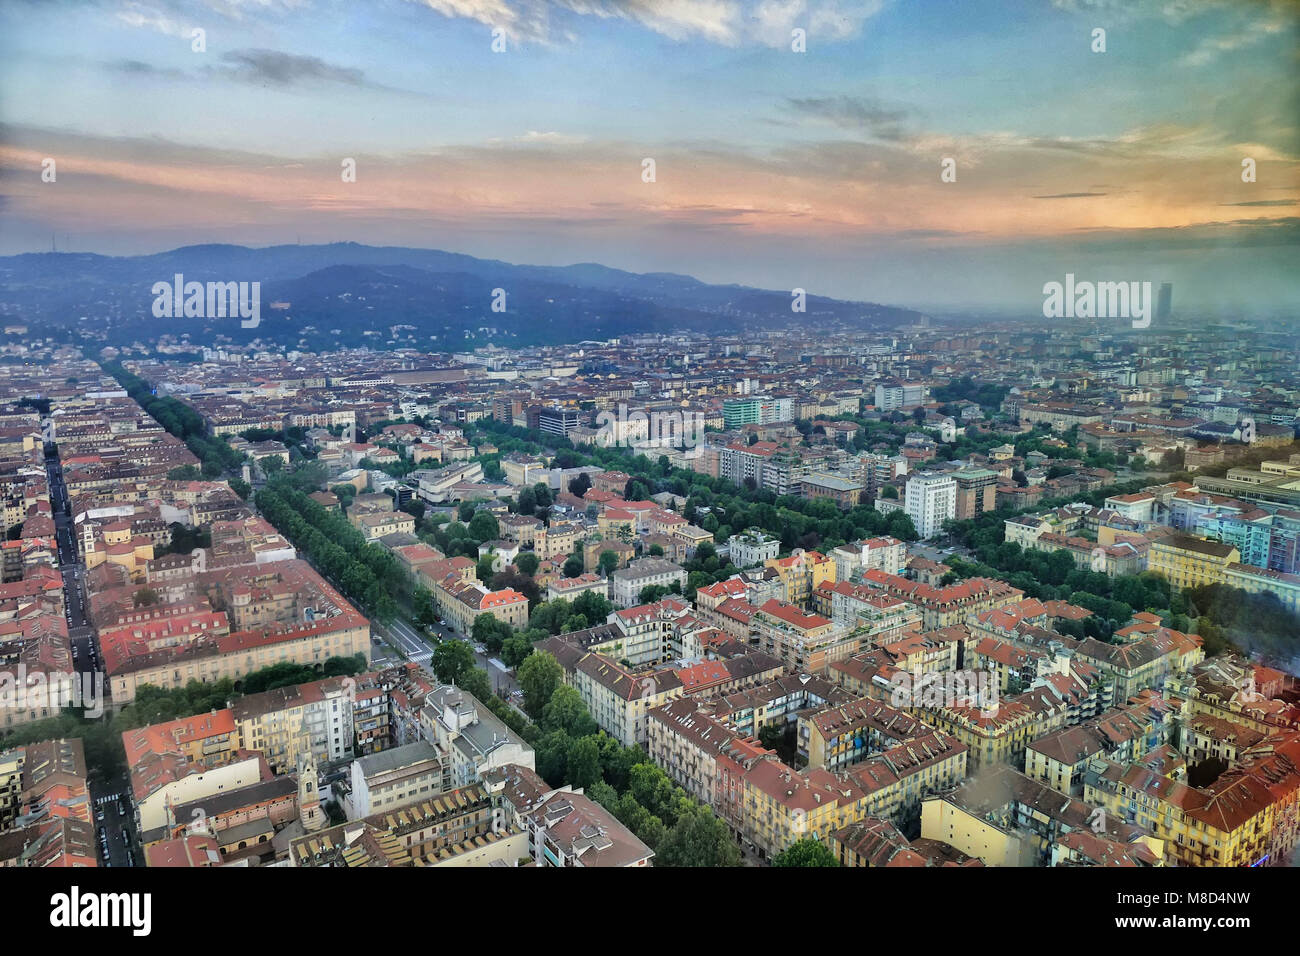 Drone vista aérea de la ciudad y de las colinas circundantes al atardecer, Turín, Italia el 13 de julio de 2016 Foto de stock